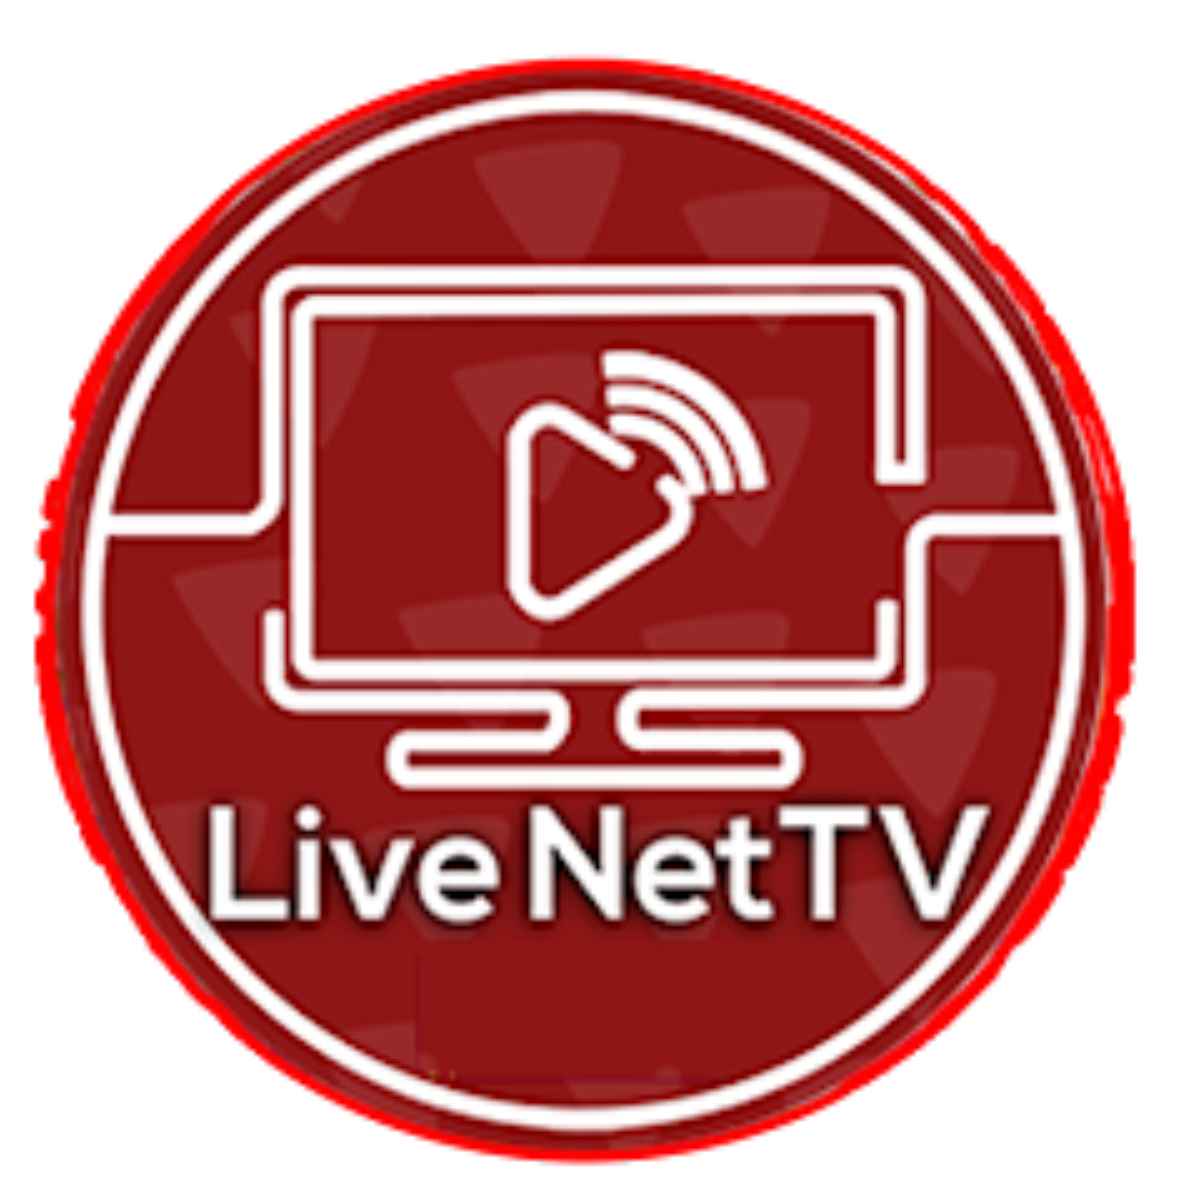 live net tv, live net tv apk, net tv live apk, live net tv ios, live net tv app, live net tv app download, live net tv apk download, live net tv download app, live net tv download apk,